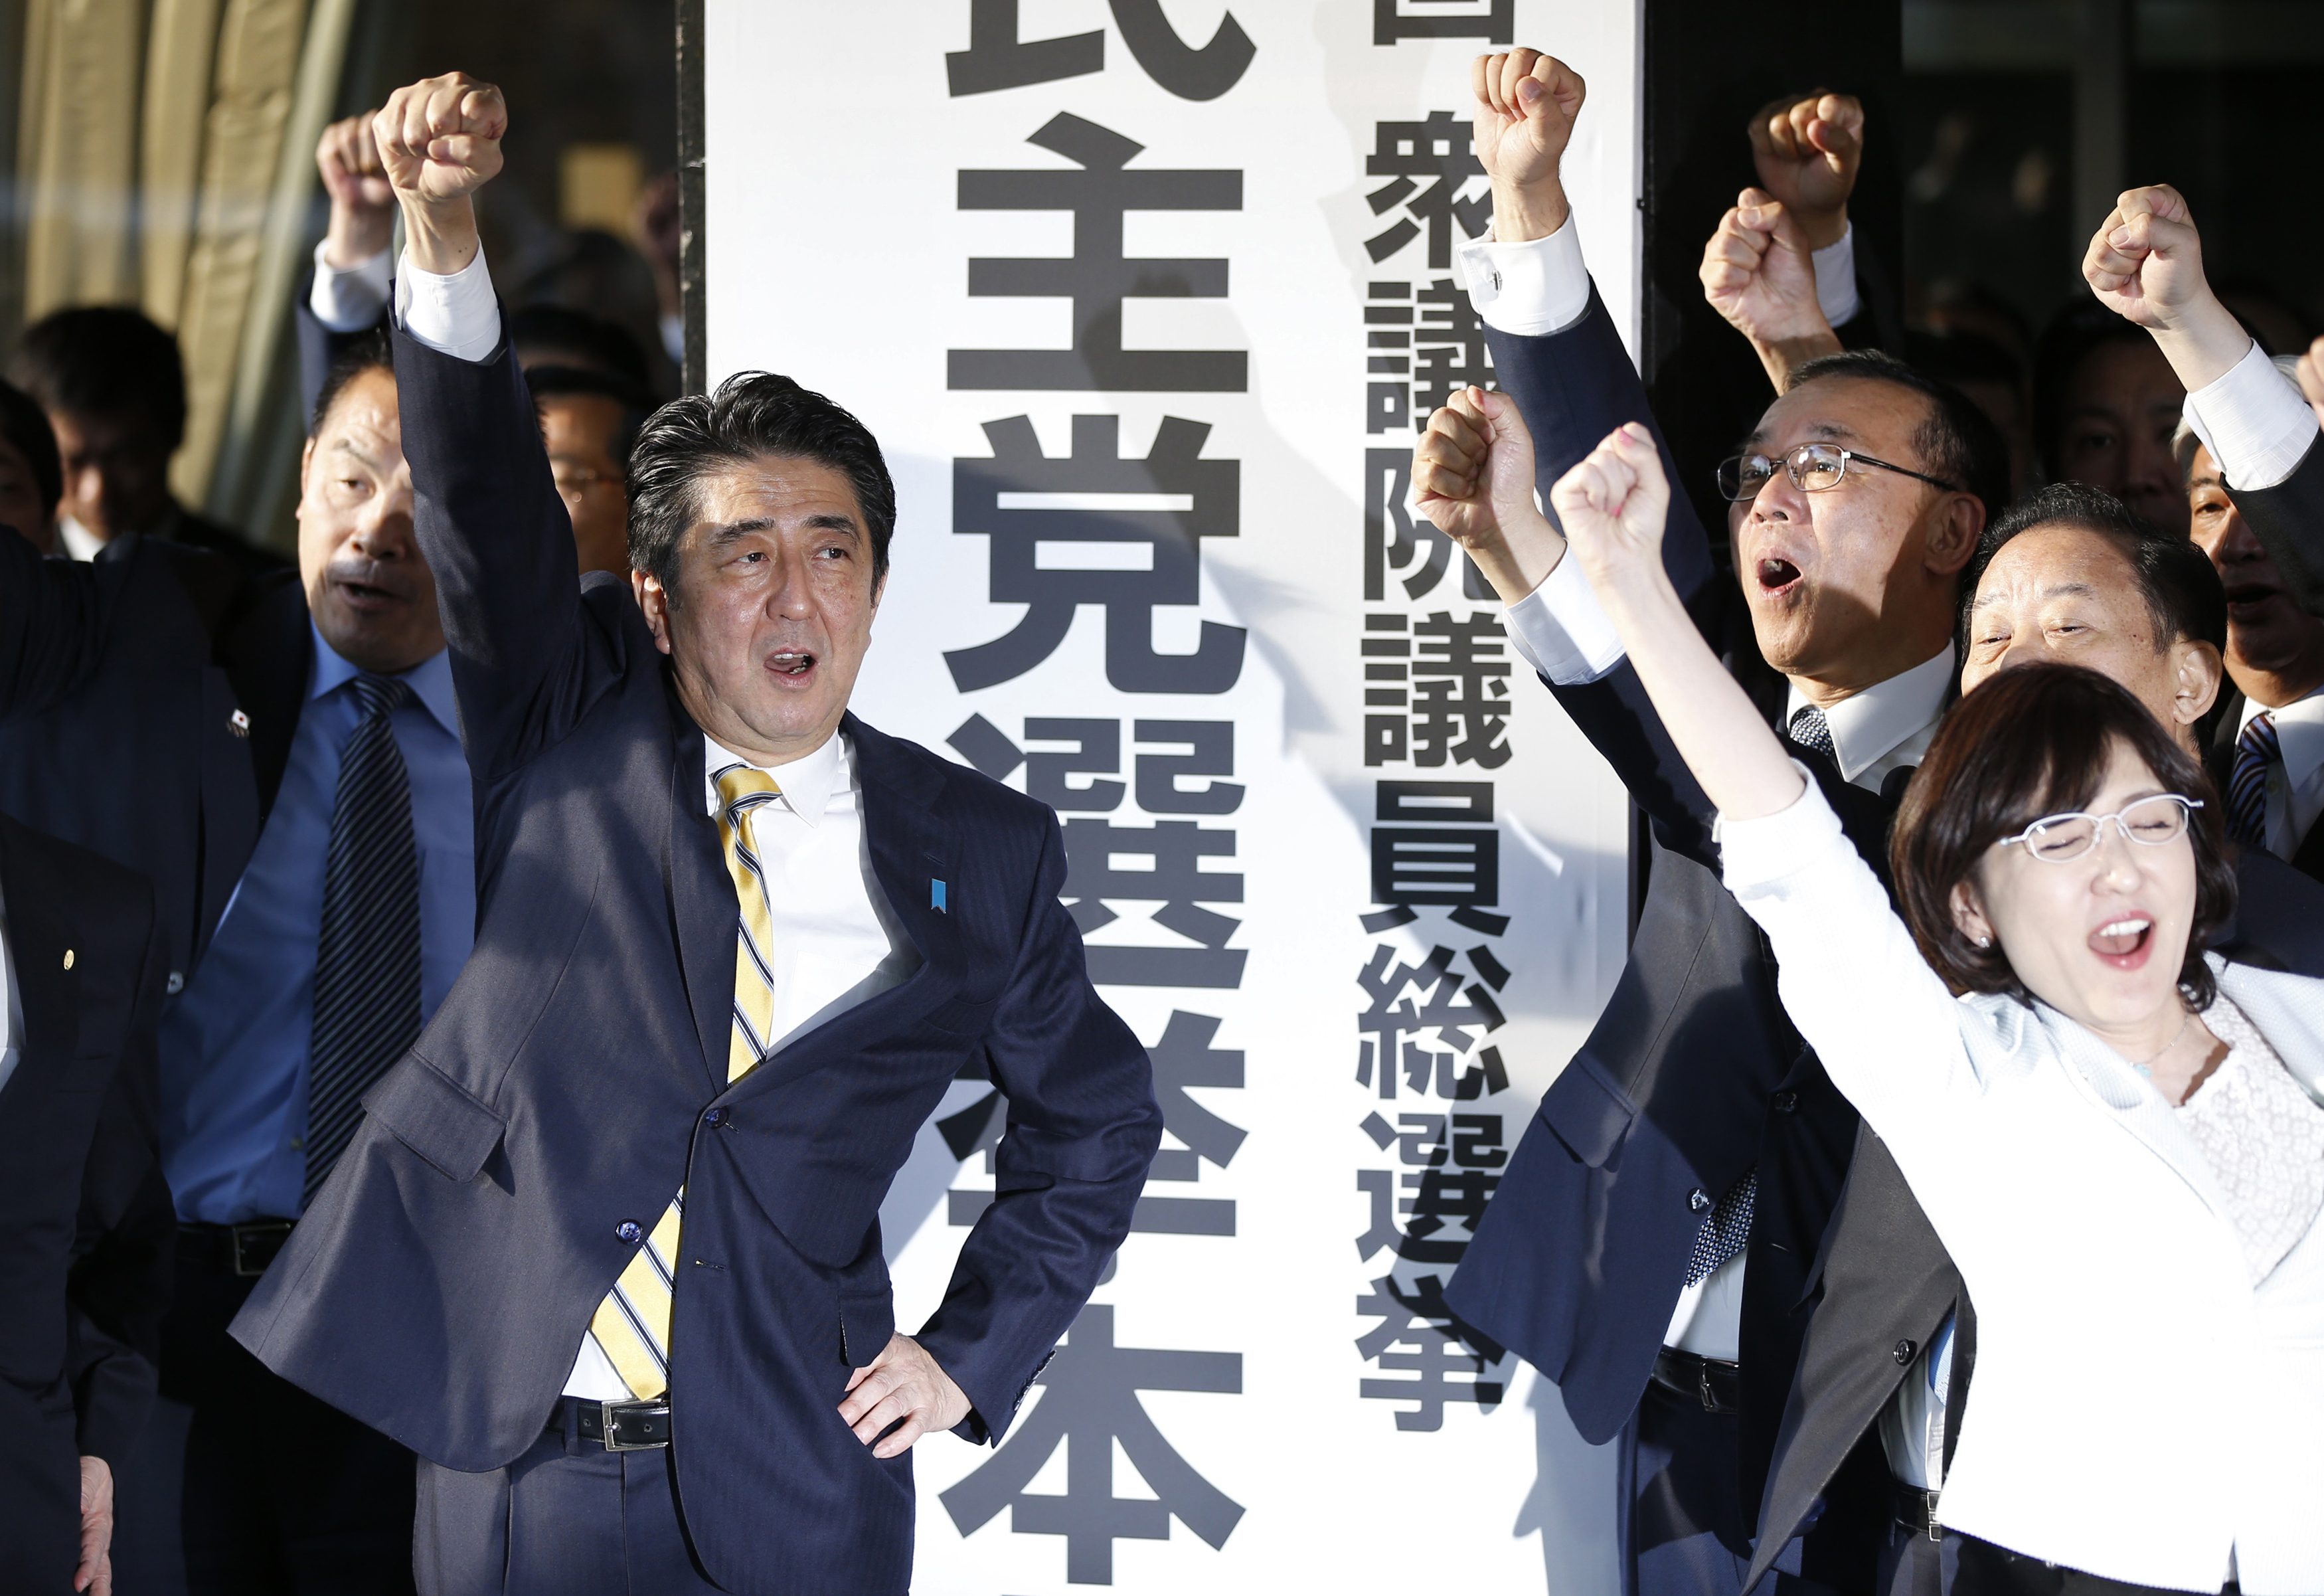 Ιαπωνία: Μεγάλη νίκη Άμπε - Μακροβιότερος πρωθυπουργός της χώρας (;)